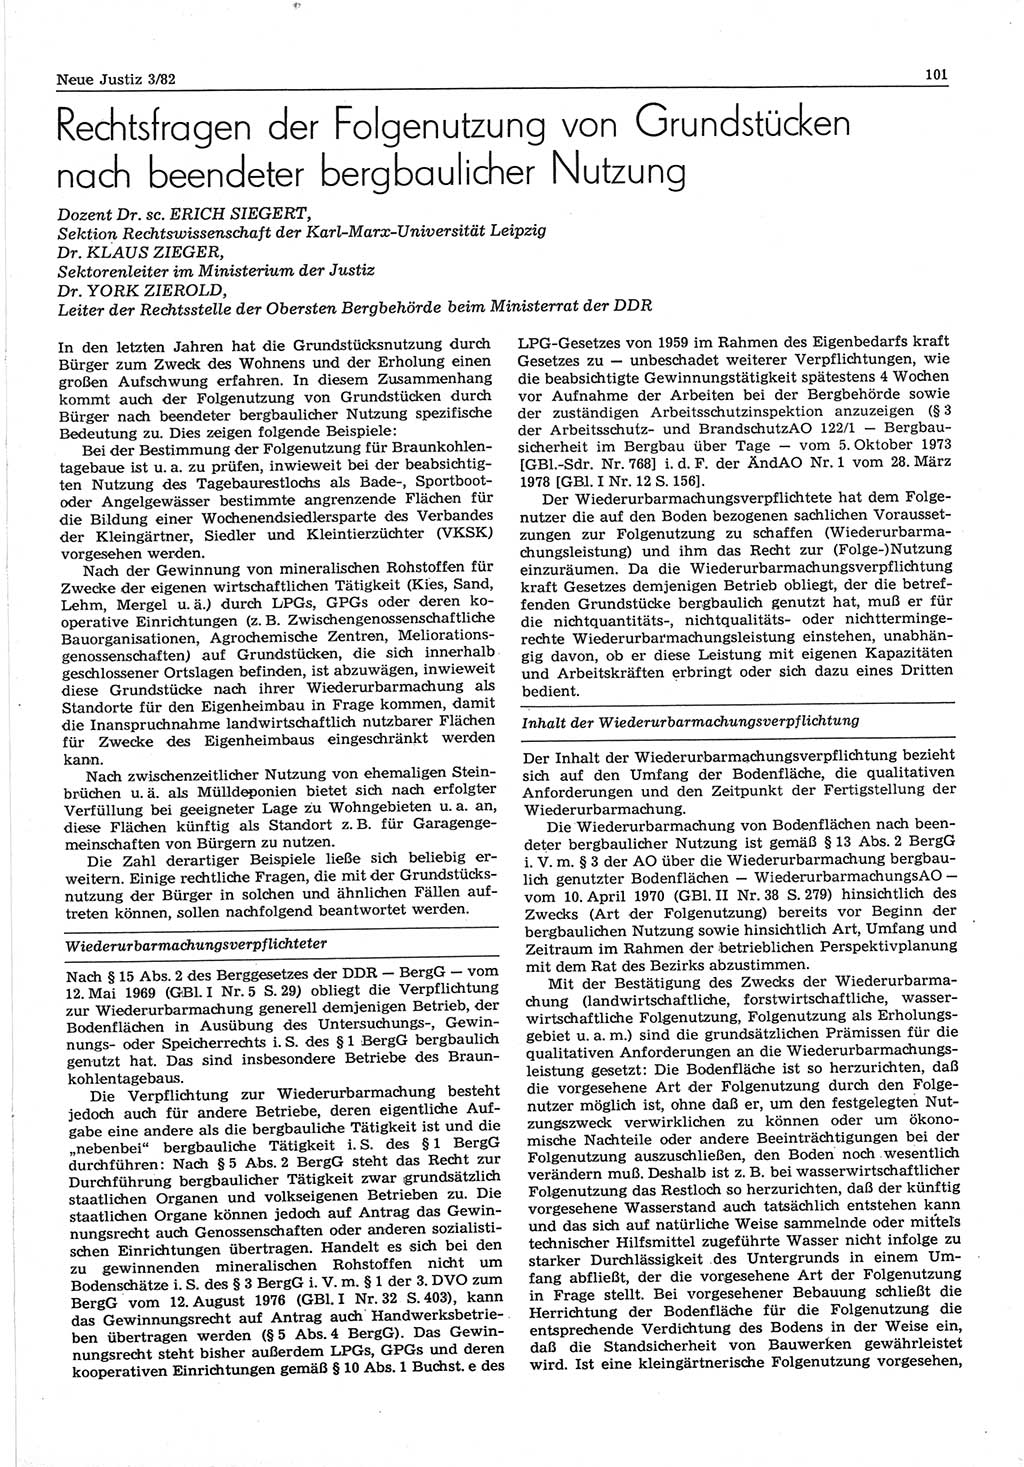 Neue Justiz (NJ), Zeitschrift für sozialistisches Recht und Gesetzlichkeit [Deutsche Demokratische Republik (DDR)], 36. Jahrgang 1982, Seite 101 (NJ DDR 1982, S. 101)